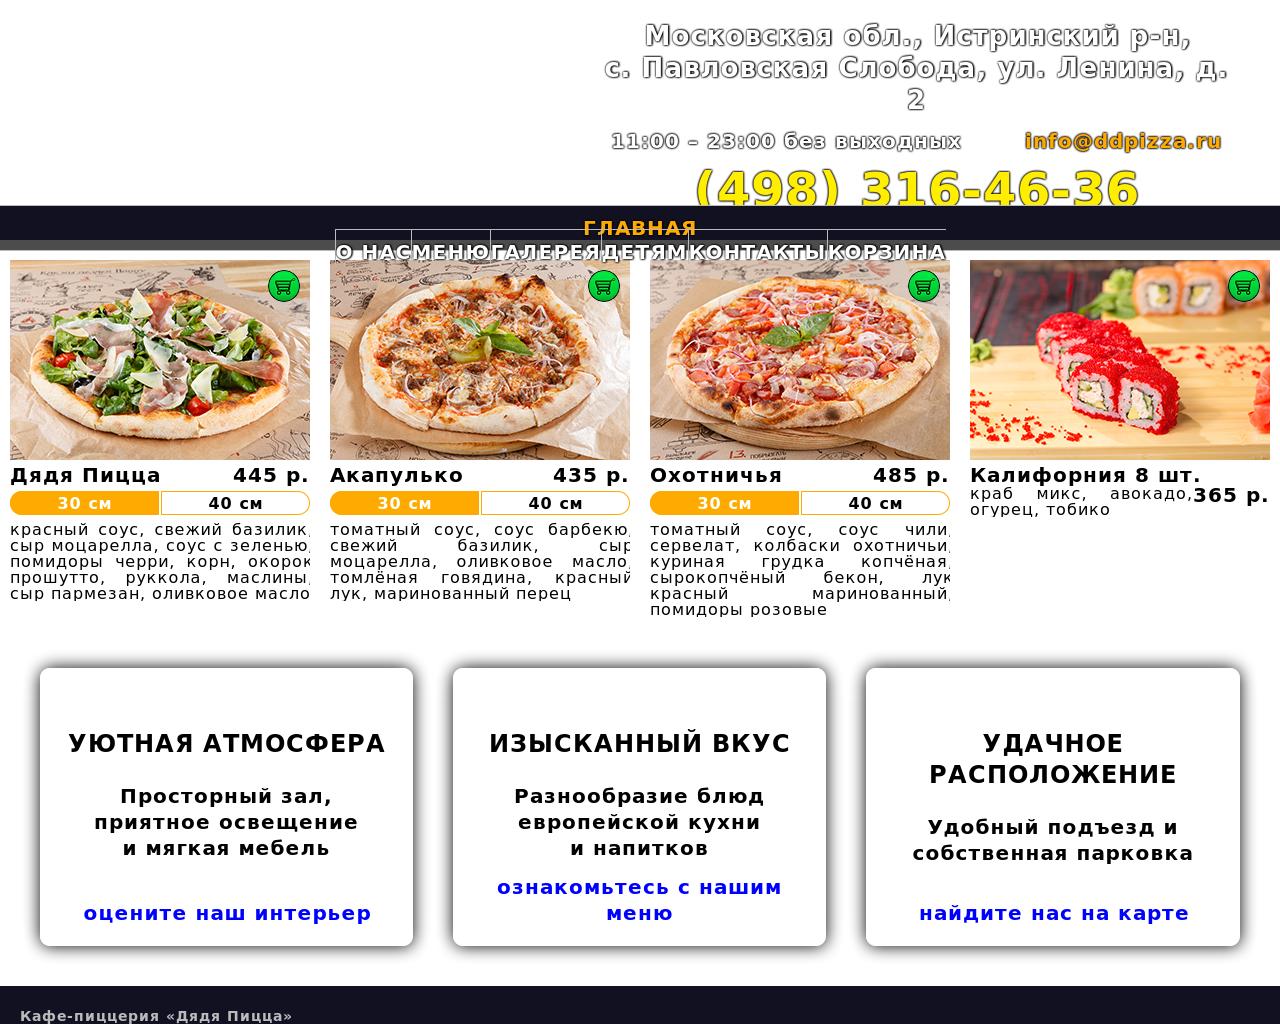 Изображение сайта ddpizza.ru в разрешении 1280x1024